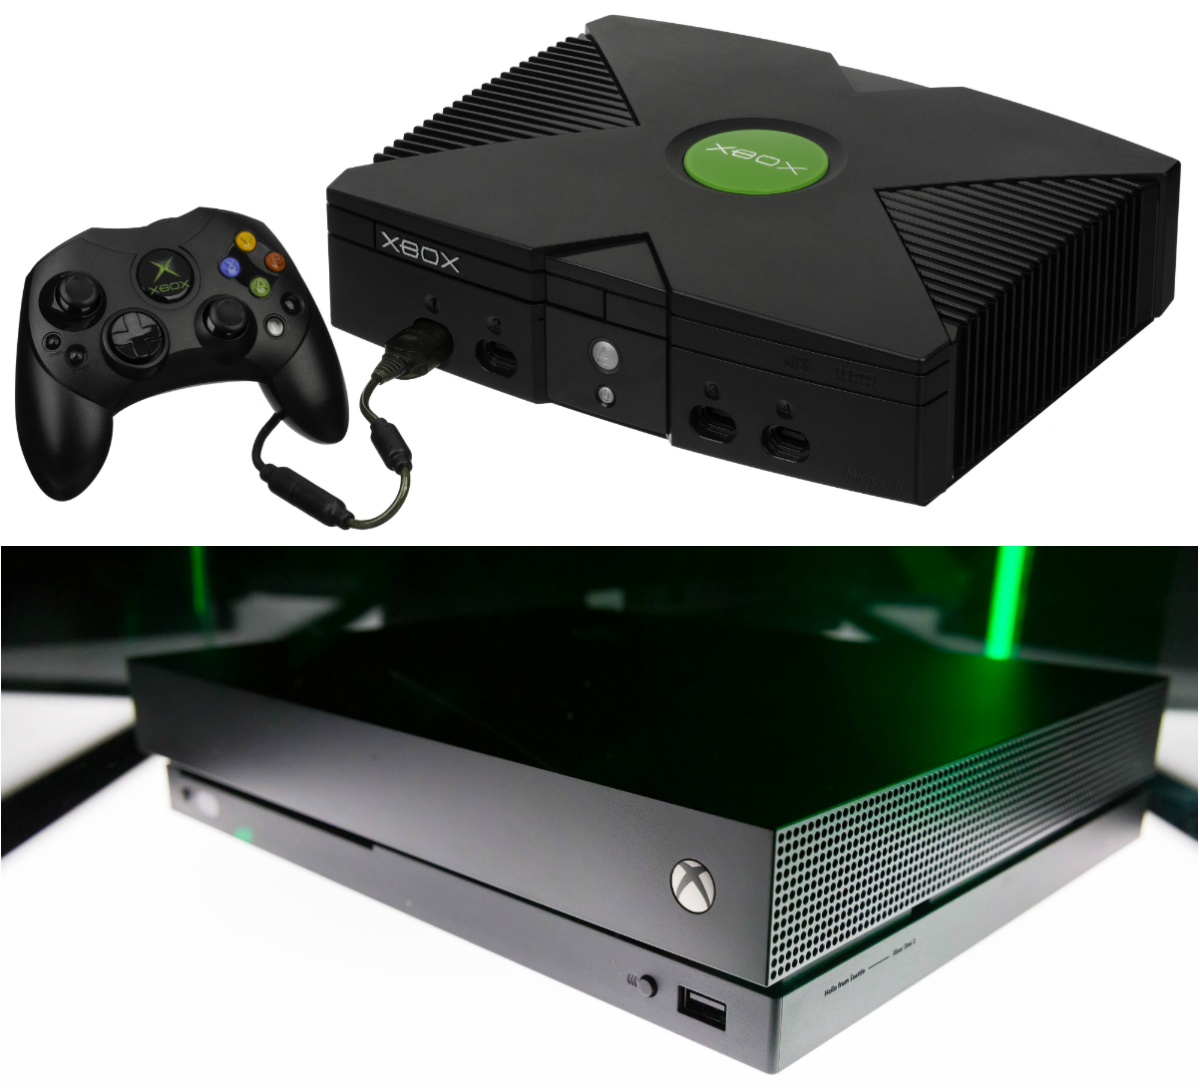 Prvi Xbox lansiran je prije 18 godina i nametao se kao konkurent Sonyjevom PlayStationu 2. Xbox je bila prva Microsoftova konzola nakon partnerstva sa Segom, čiji je Dreamcast pokretao verziju Windows CE operativnog sustava. Sadašnja generacija Xboxa predstavljena je još 2013. godine, a najnoviji pripadnik serije, Xbox One X, krenuo je u prodaju krajem 2017. godine. Današnji Xbox može neke igre prikazivati u 4K rezoluciji, dok je prvi Xbox mogao igre prikazivati do maksimalni 720p.